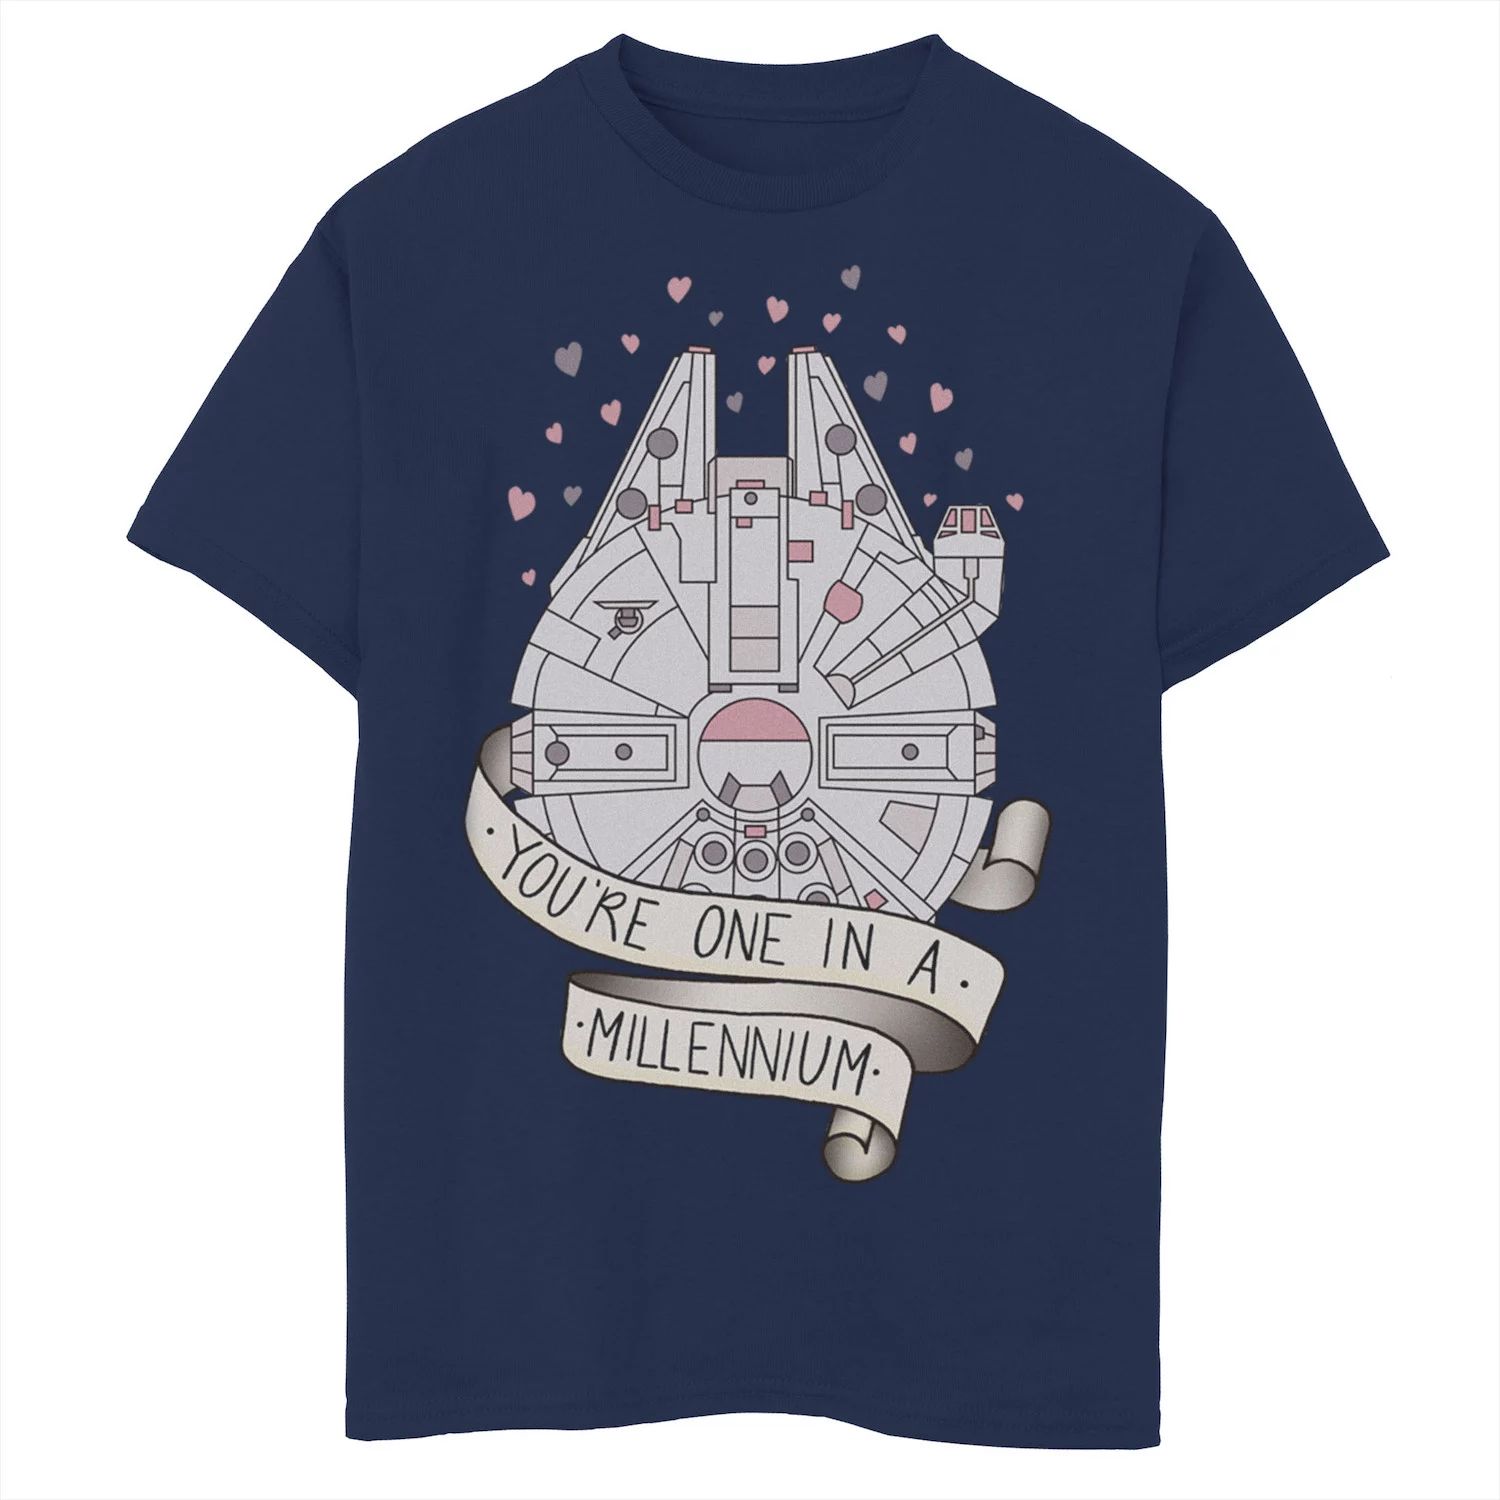 Футболка с рисунком «Сокол тысячелетия» для мальчиков 8–20 лет «Звездные войны» «Один в тысячелетии» Star Wars футболка с рисунком сокол тысячелетия для мальчиков 8–20 лет star wars